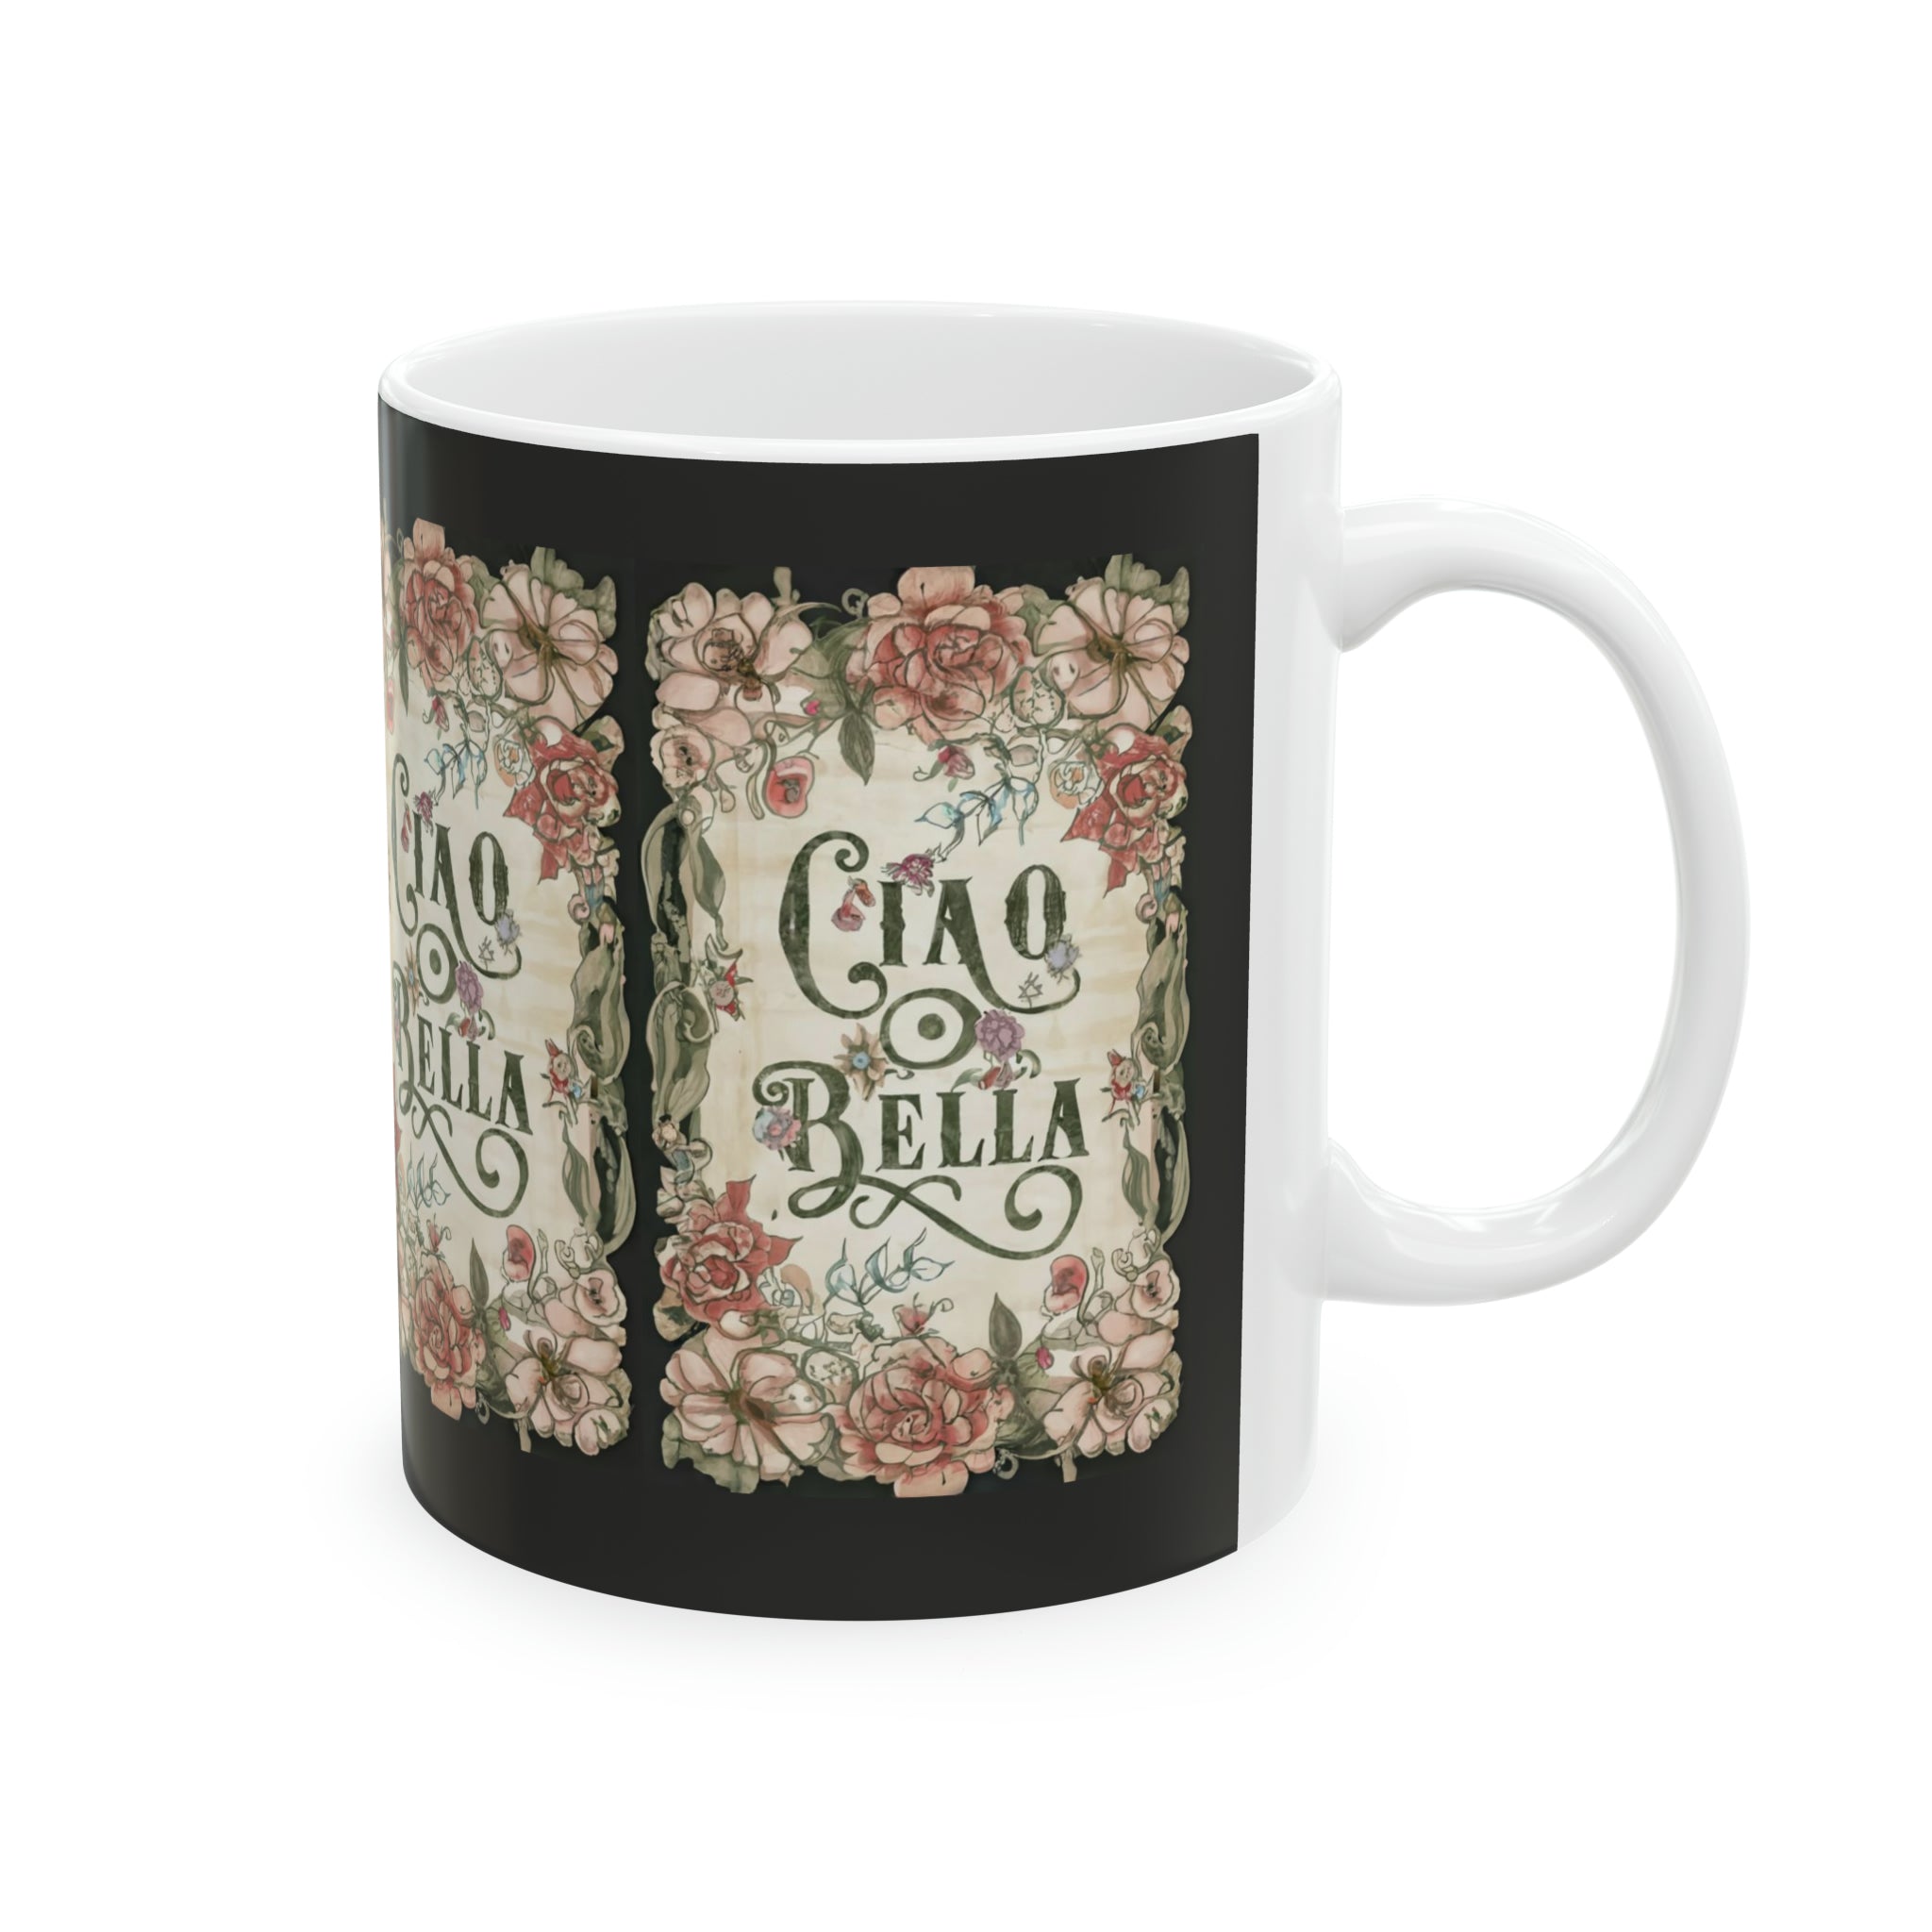 Ciao Bella - Ceramic Mug, 11oz